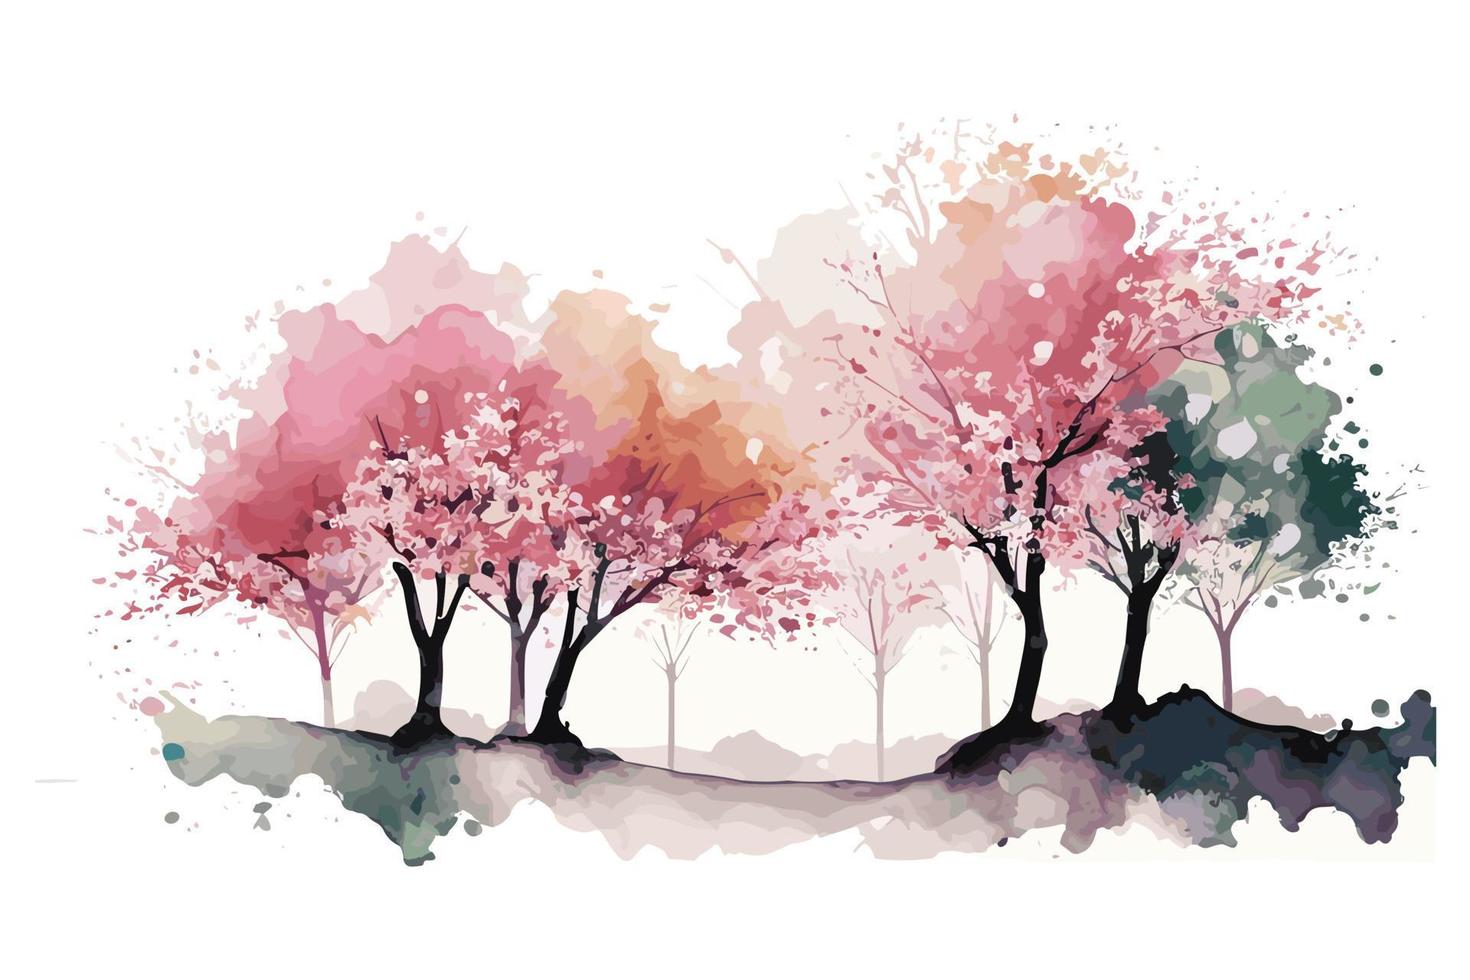 acuarela Cereza florecer arboleda ilustración diseño vector